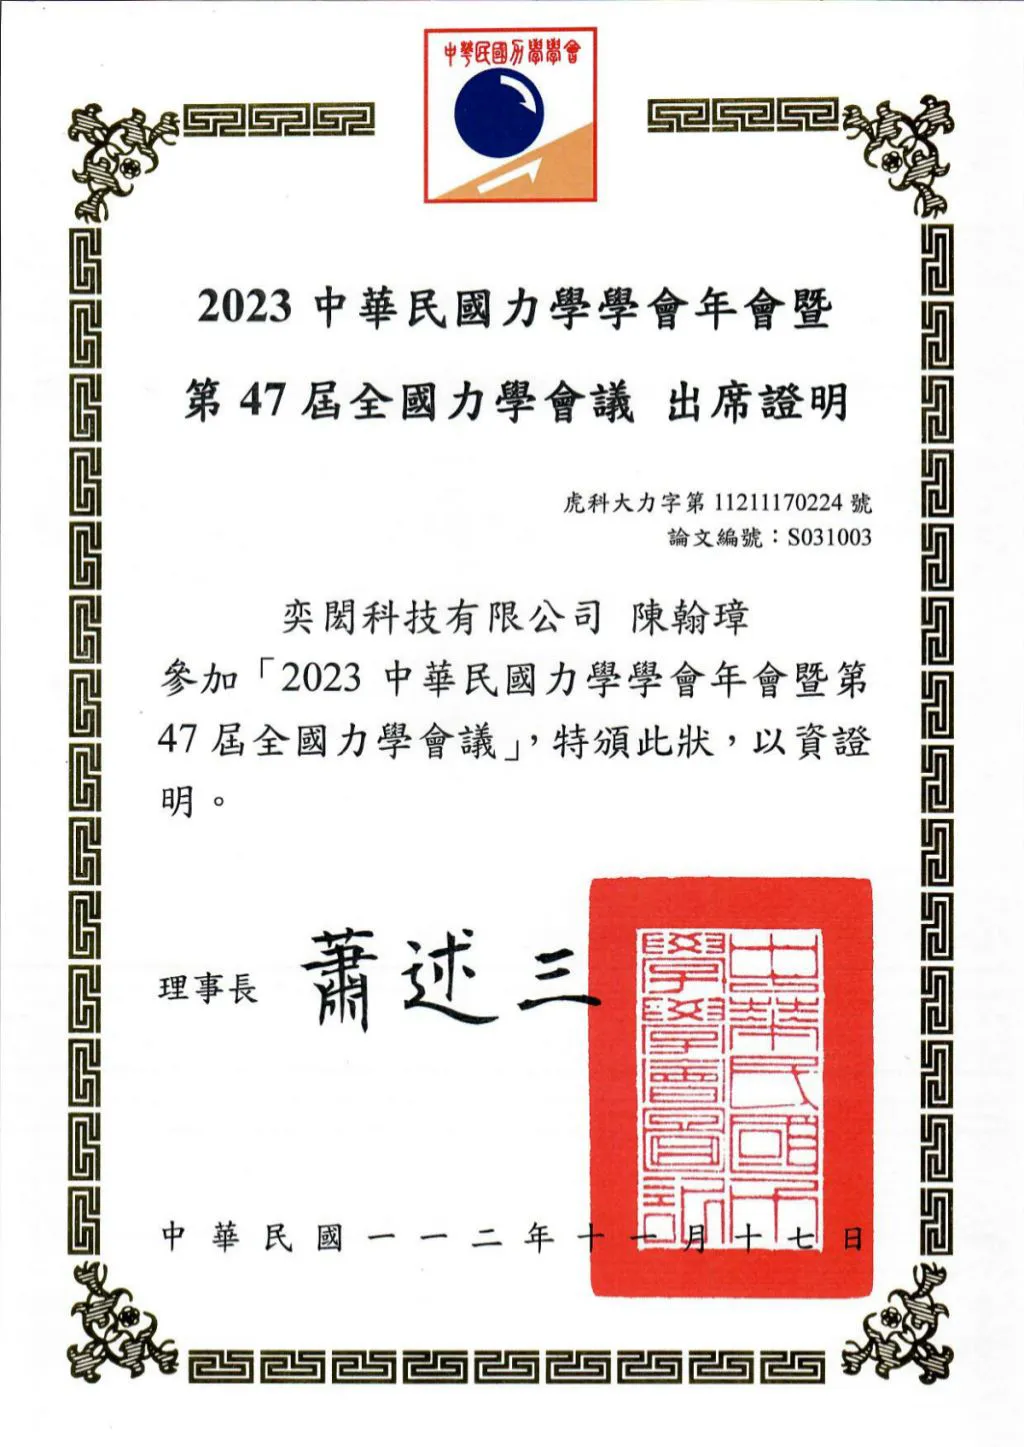 2023中華民國力學學會年會暨第47屆全國力學會議 陳翰璋